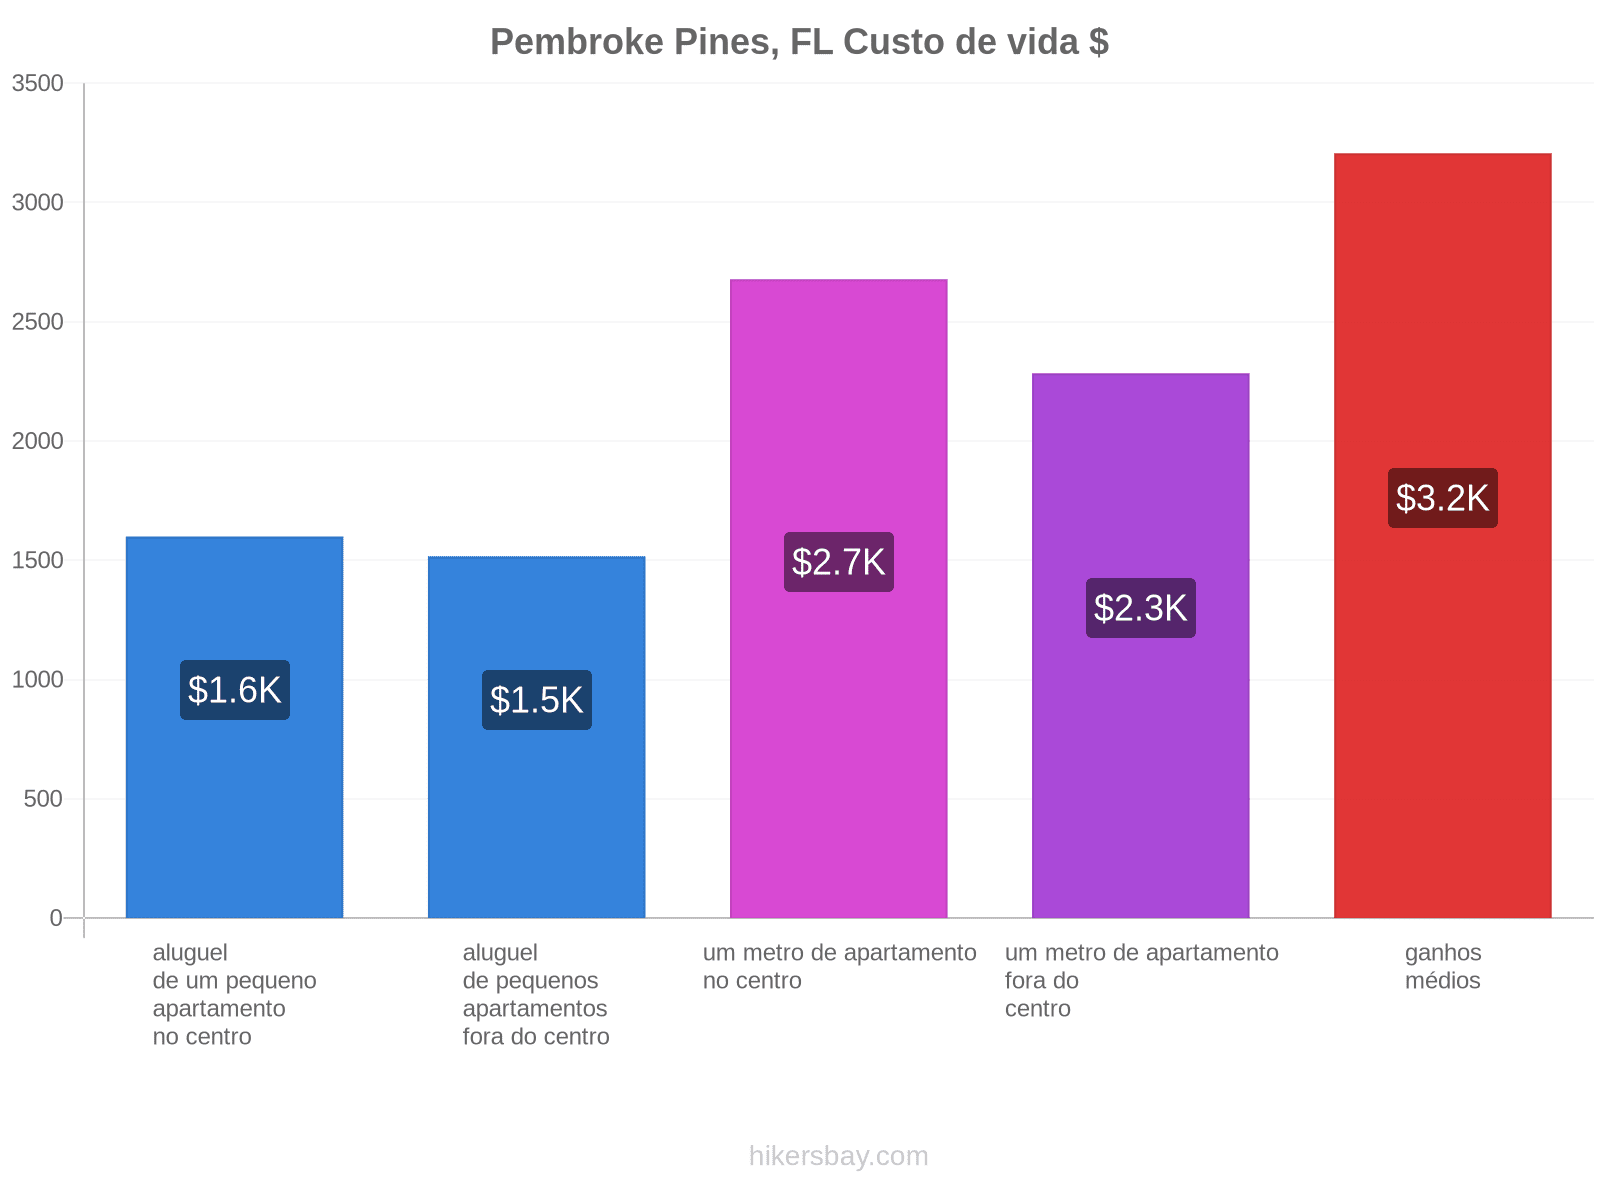 Pembroke Pines, FL custo de vida hikersbay.com